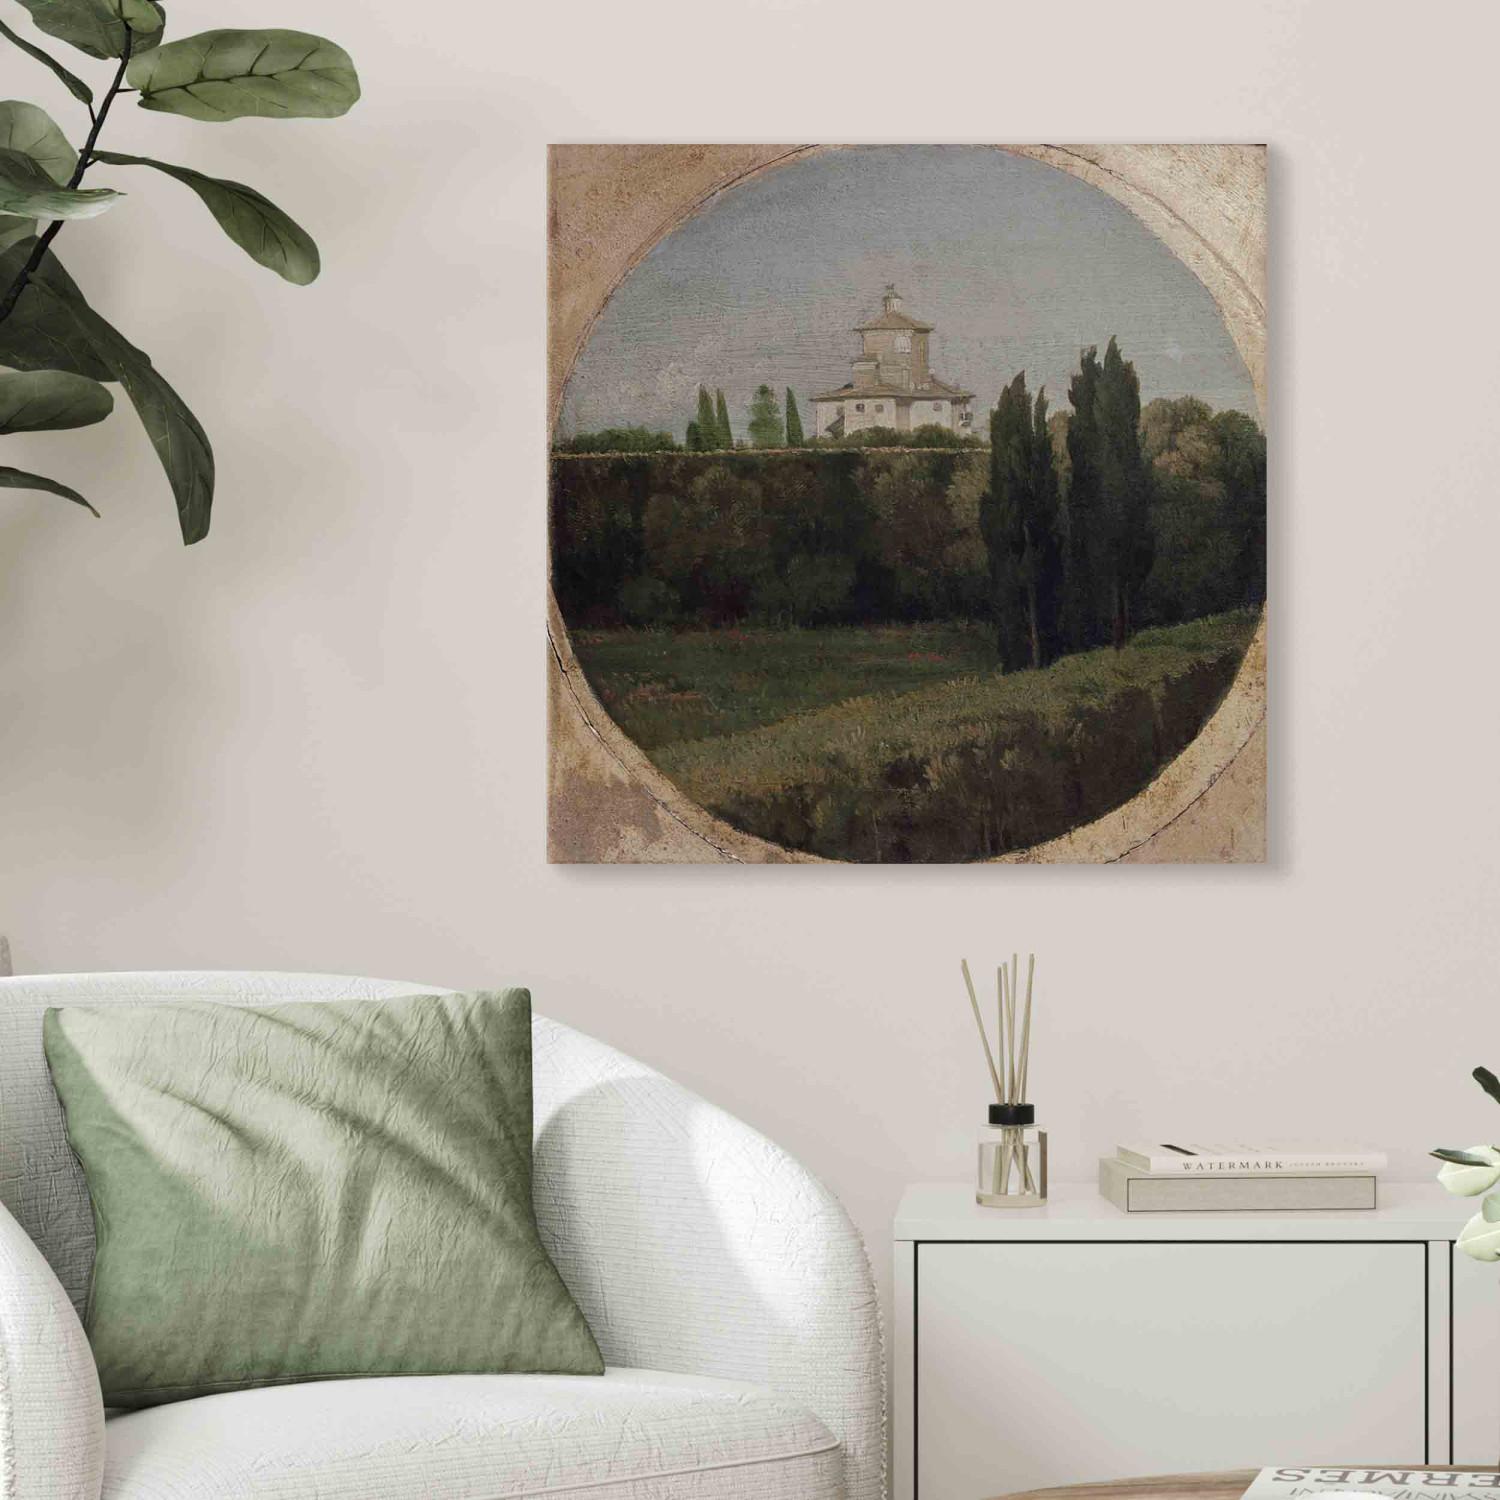 Réplica de pintura View of Belvedere of the Villa Borghese in Rome